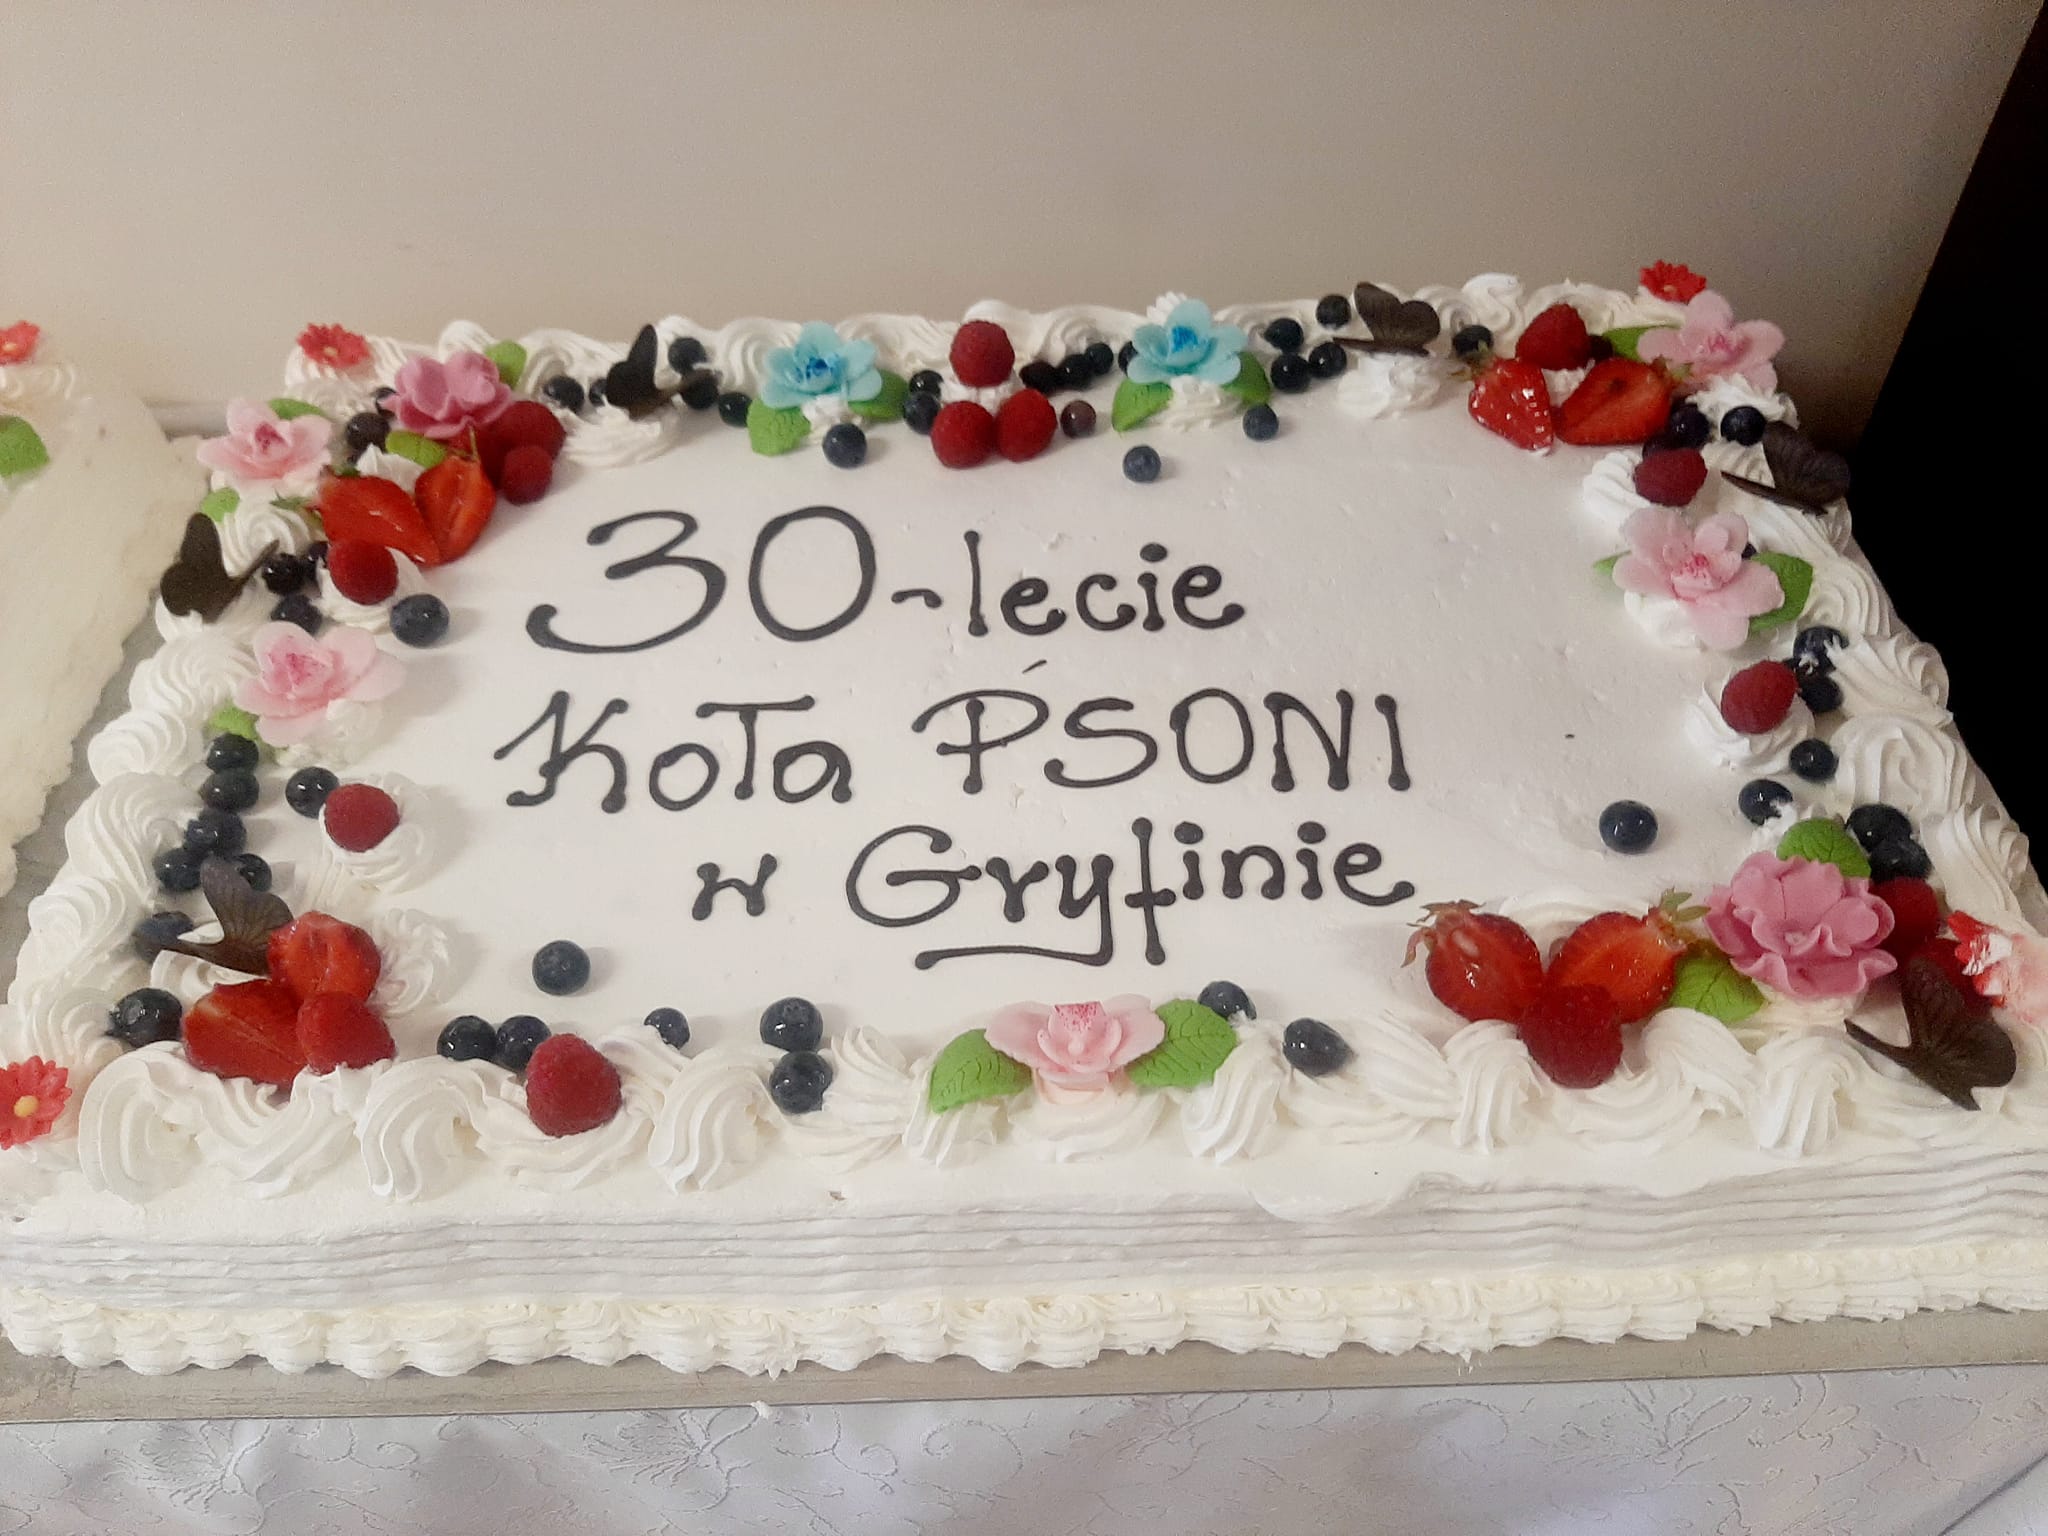 Obchody 30-lecia koła PSONI w Gryfinie